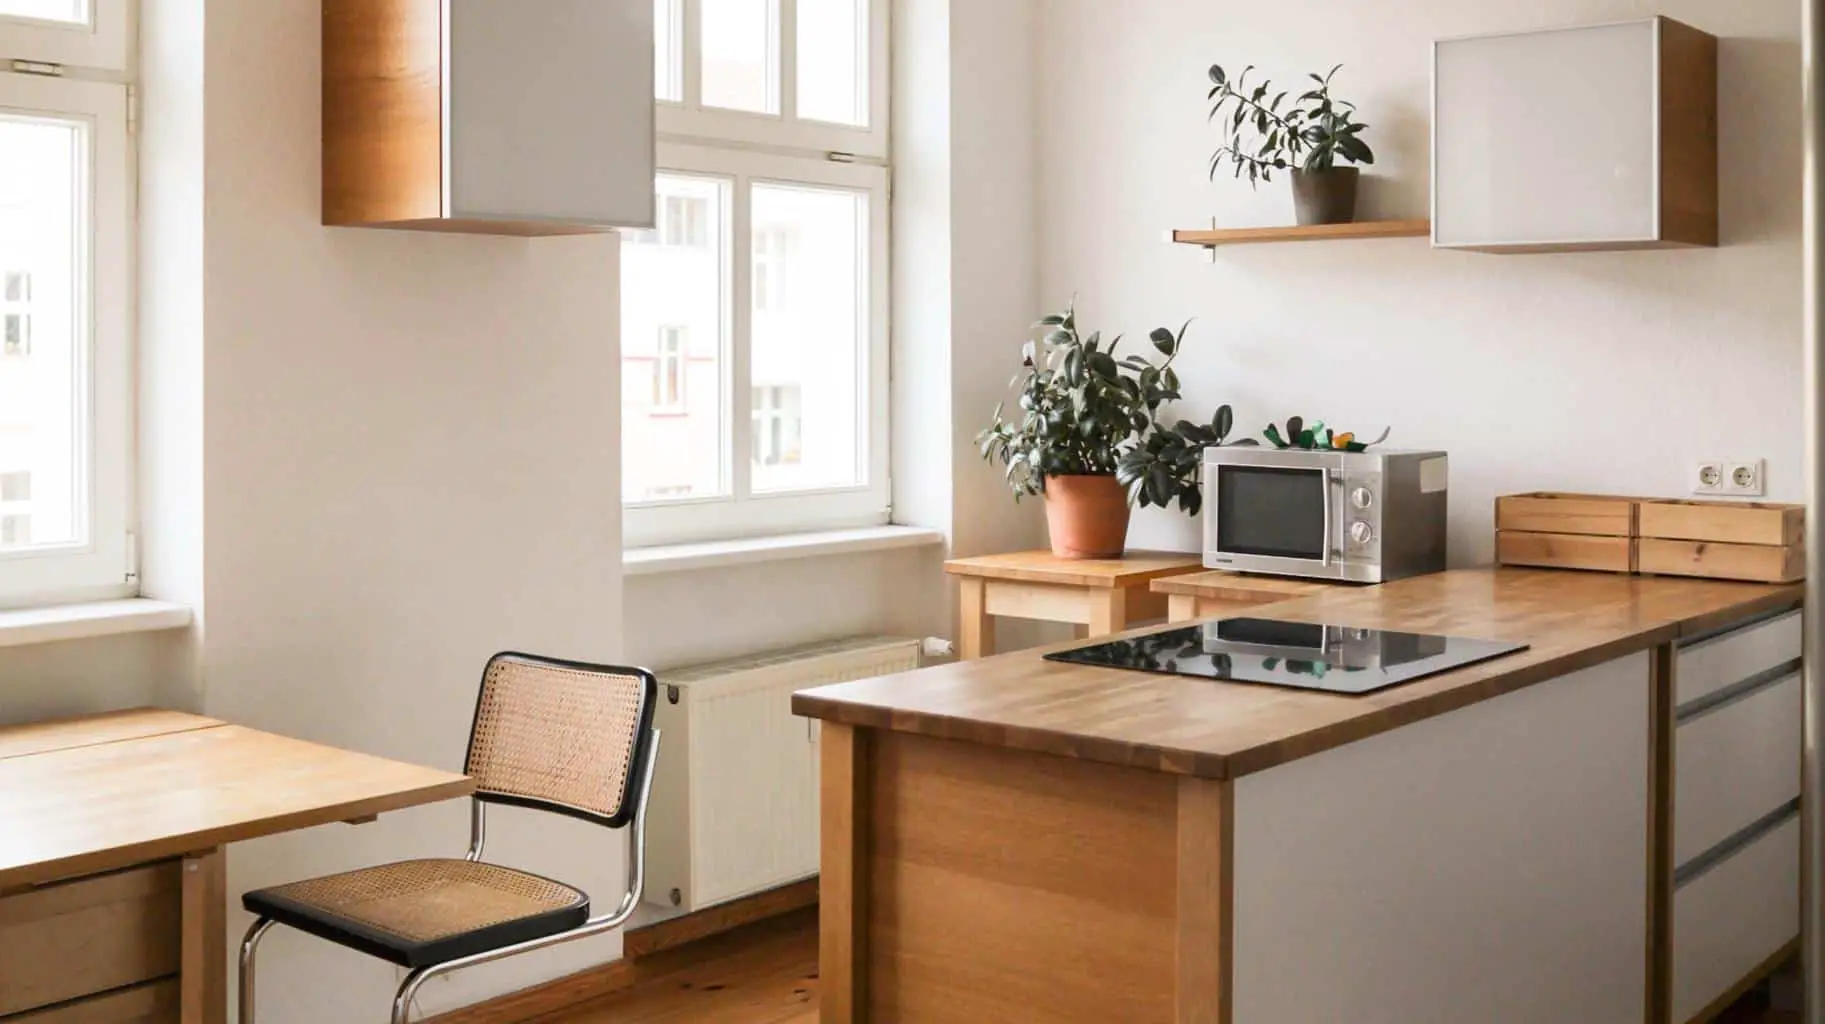 diy minimalist kitchen table